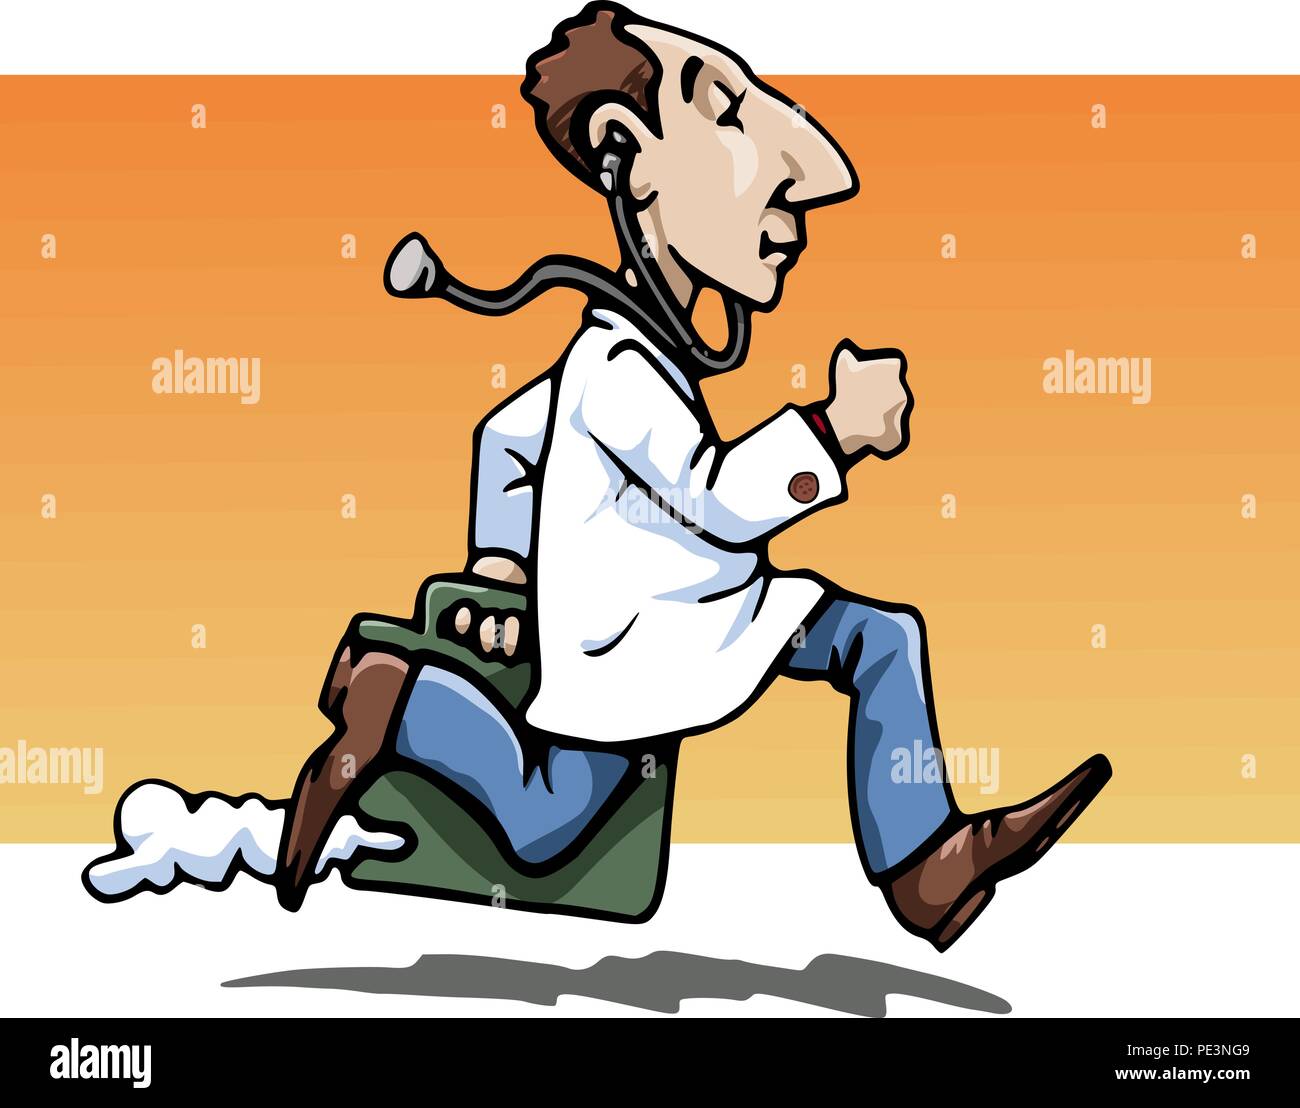 Cartoon Stil Abbildung: Eine lustige, Arzt, das Tragen eines Jungtieren, holt seine Arbeiten Tasche. Ein Stethoskop an seiner Ohren. Orange backgro Stock Vektor